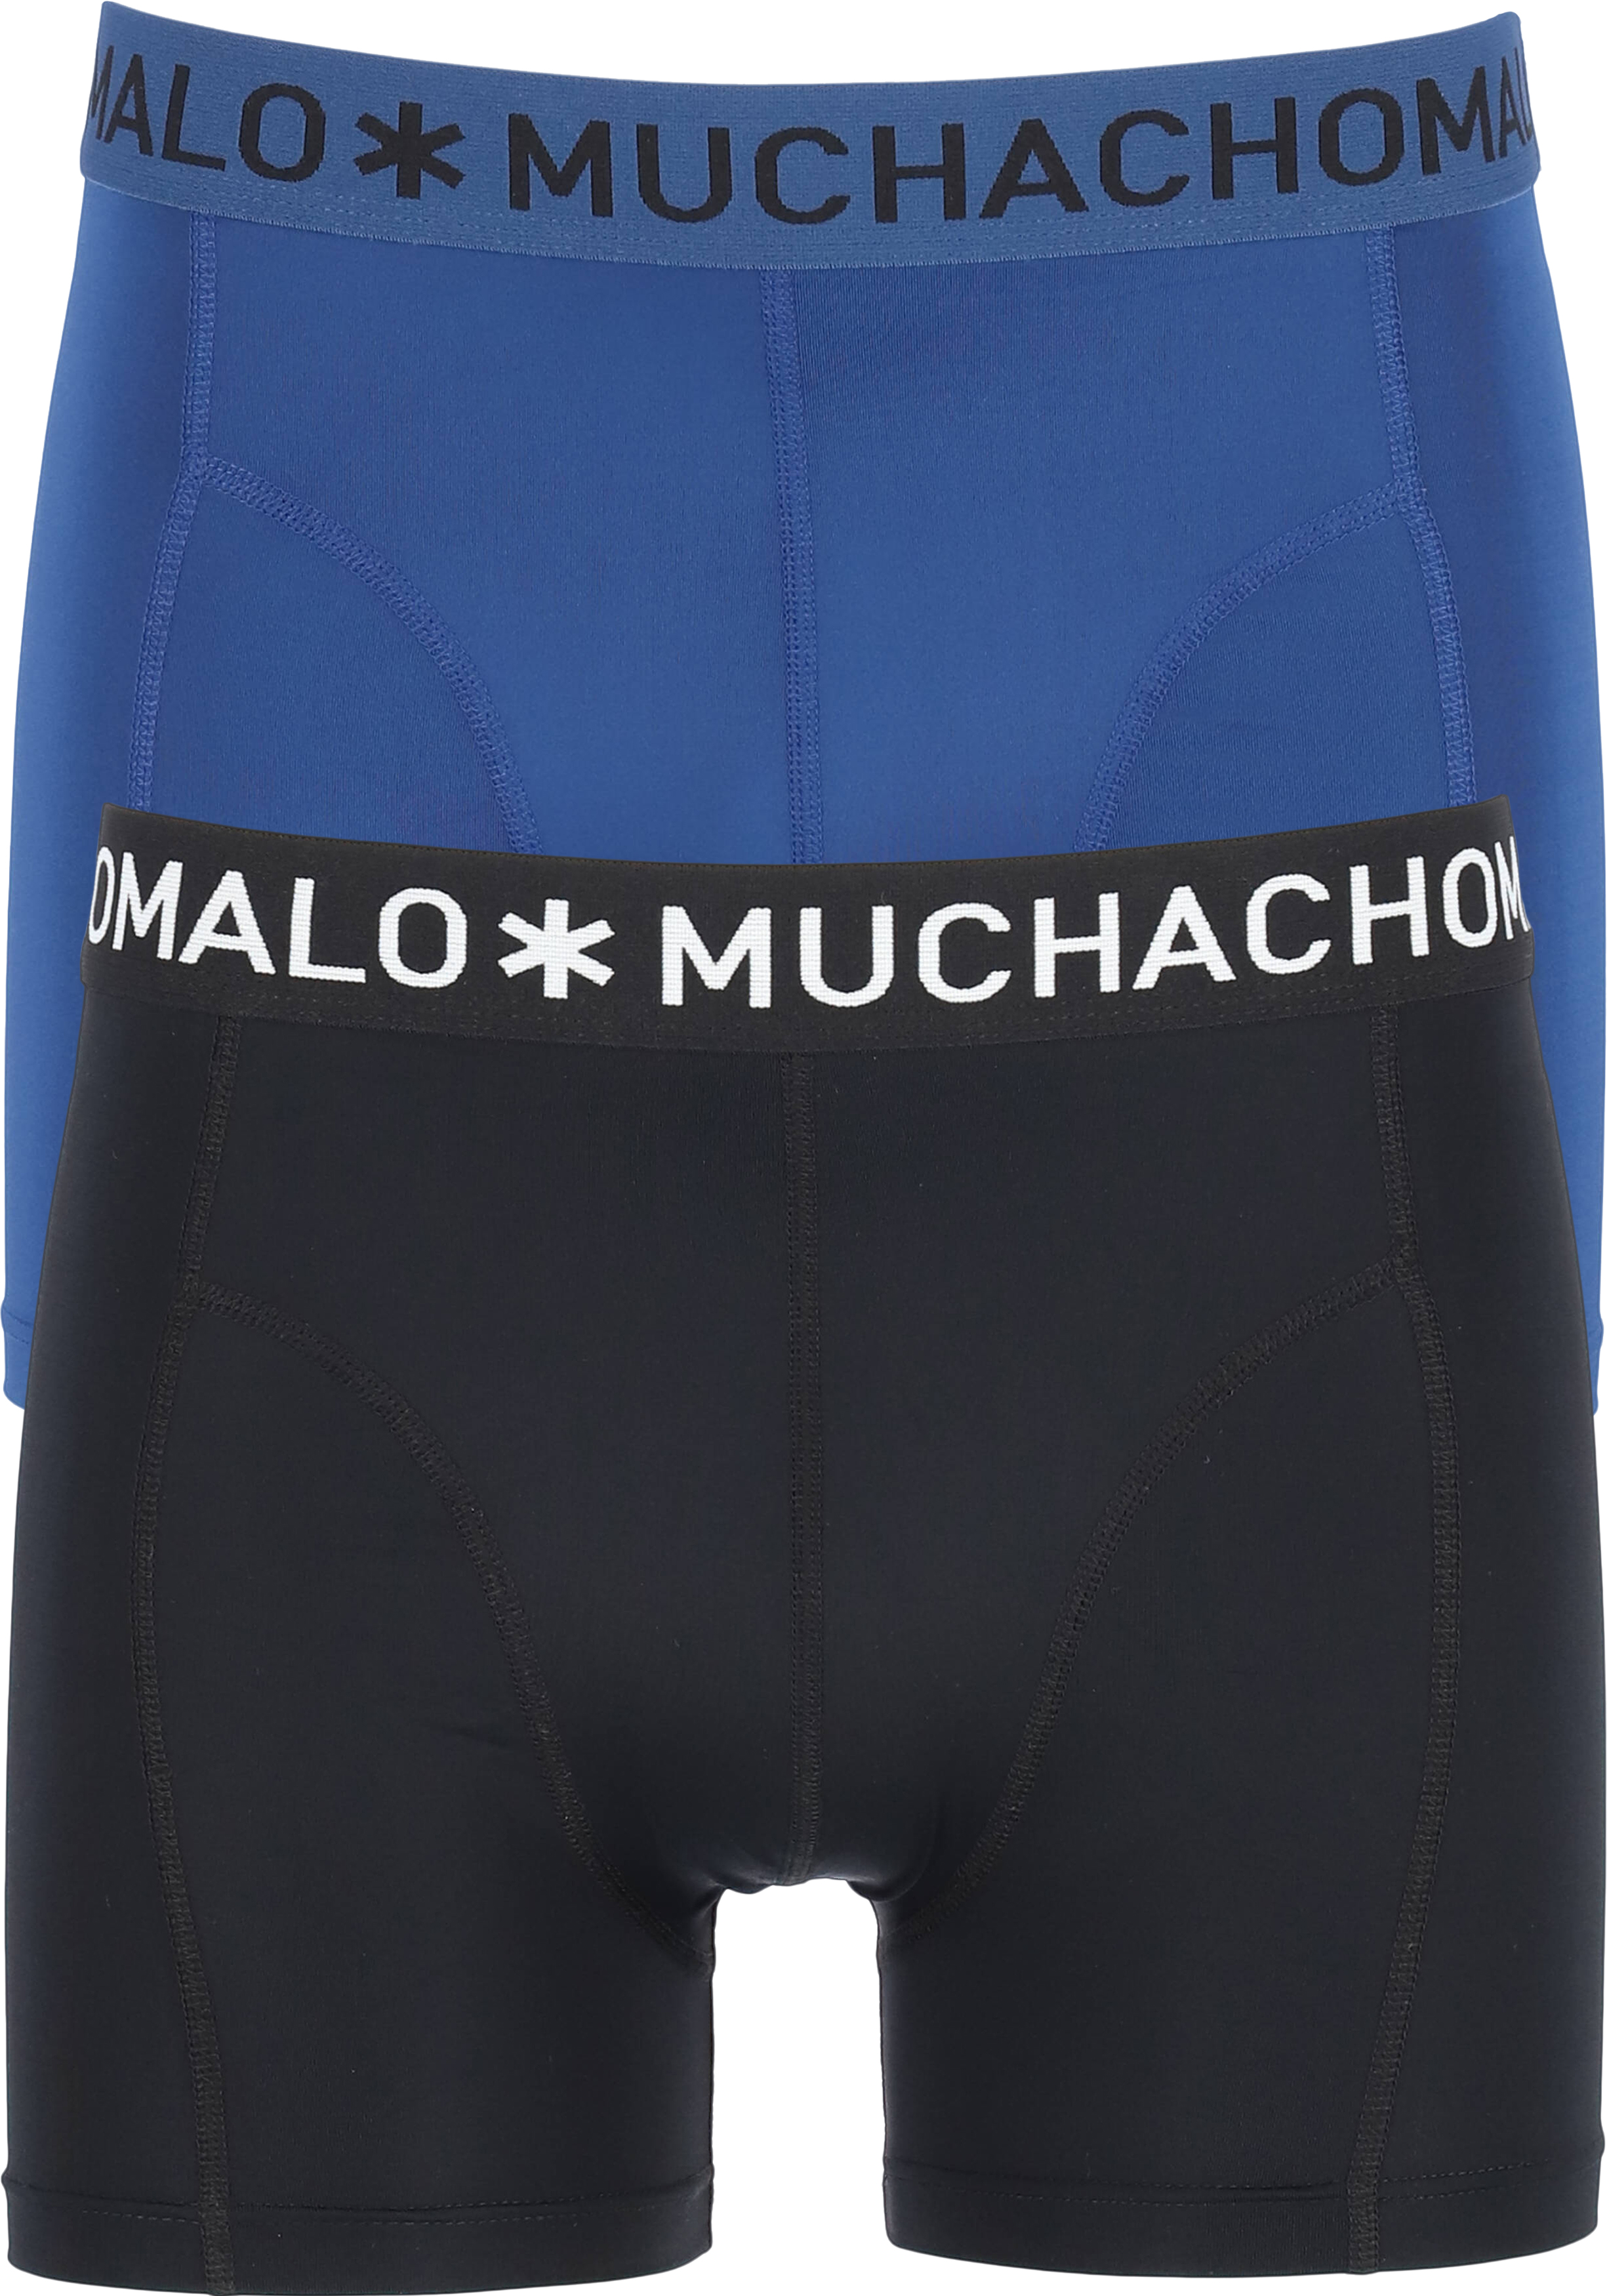 Keer terug lengte Rijk Muchchomalo microfiber boxershorts (2-pack), heren boxers normale... - Shop  de nieuwste voorjaarsmode